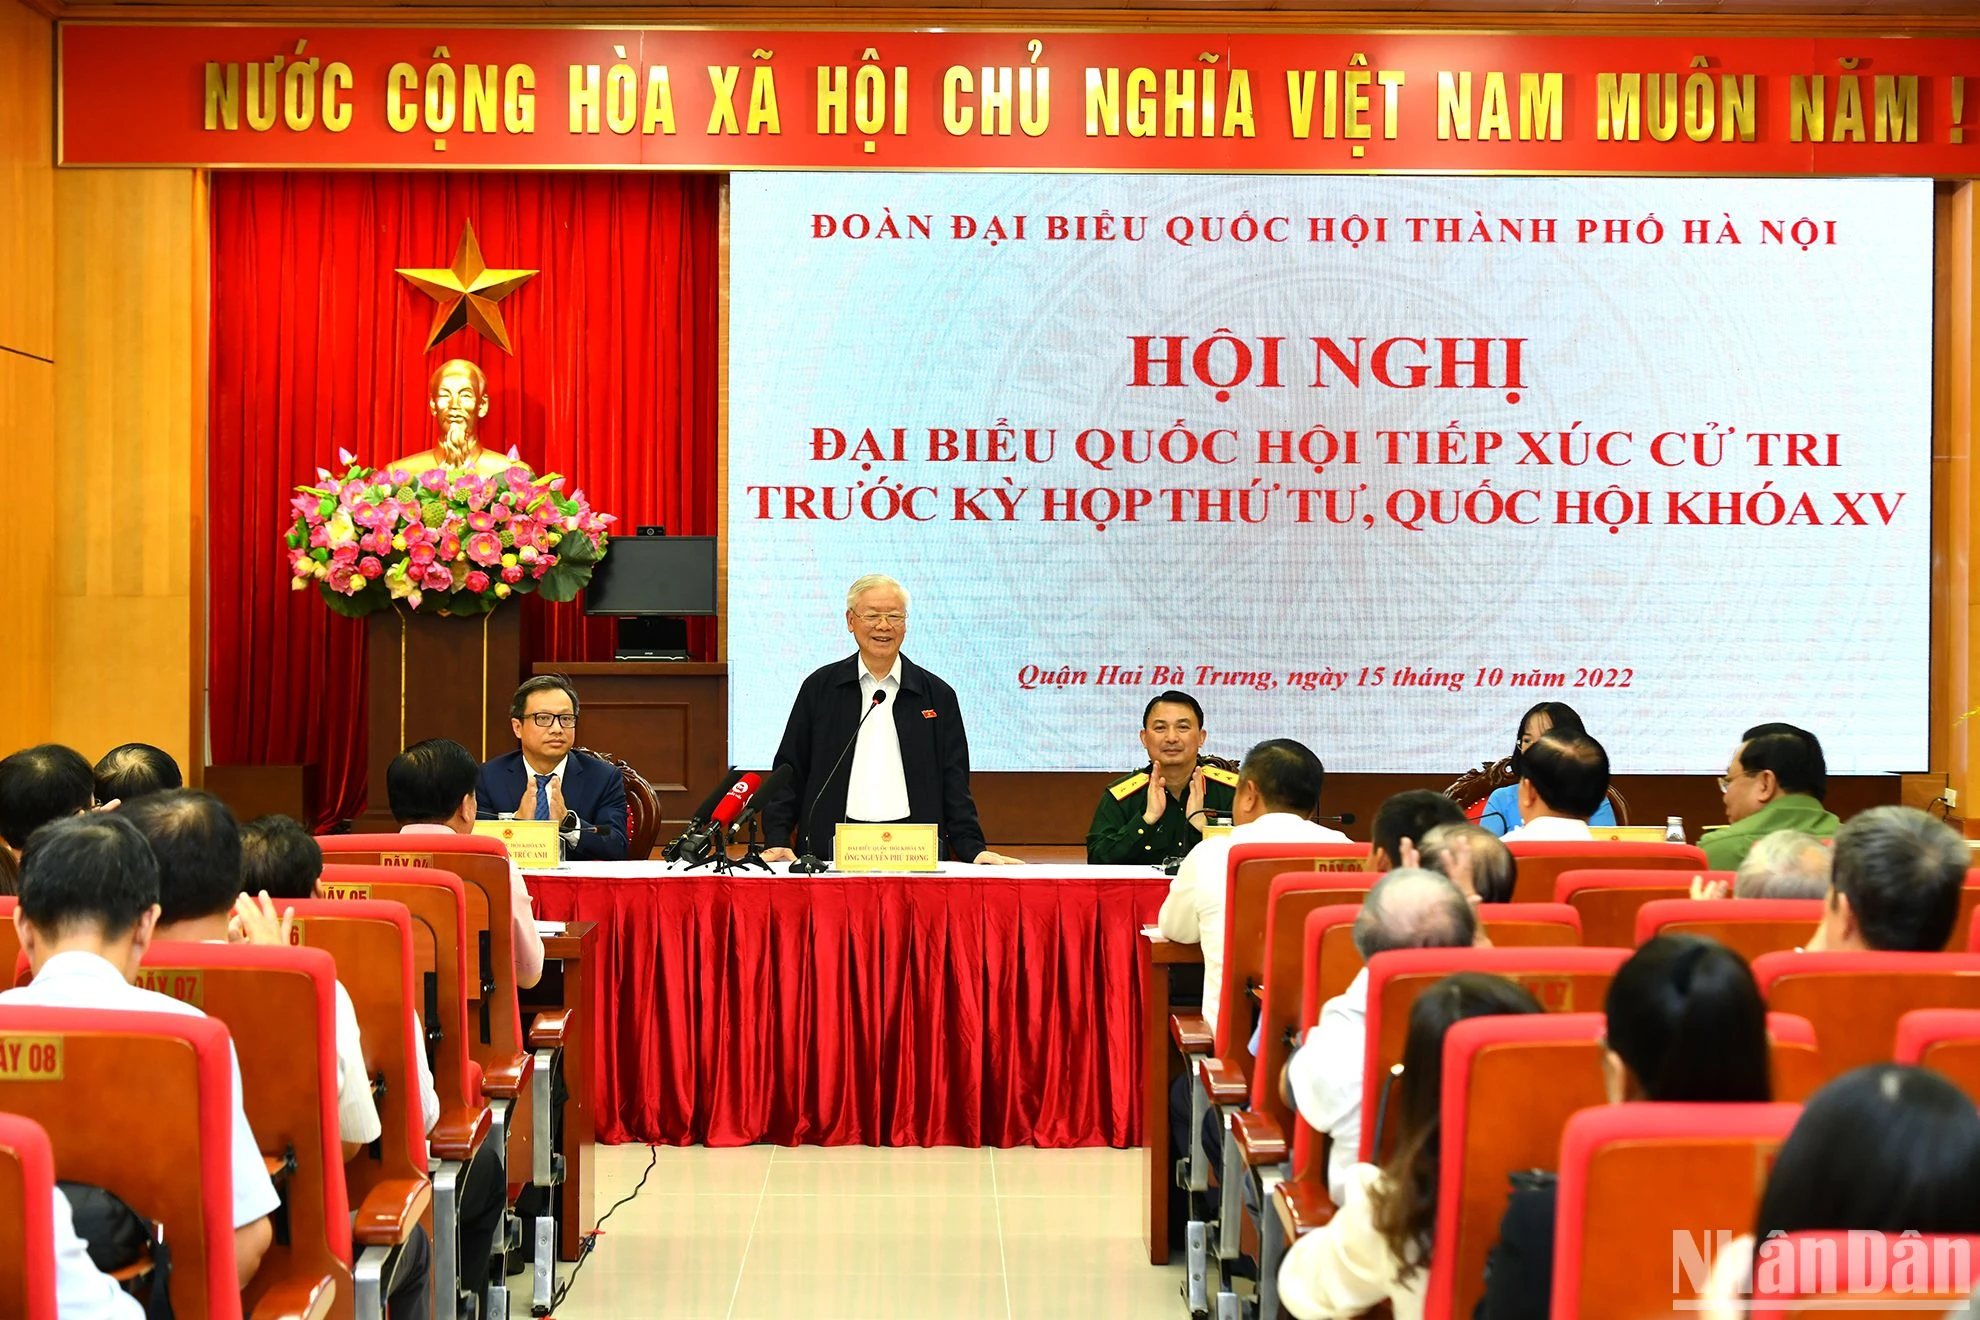 [Ảnh] Tổng Bí thư Nguyễn Phú Trọng - một phong cách mẫu mực của đại biểu nhân dân ảnh 1